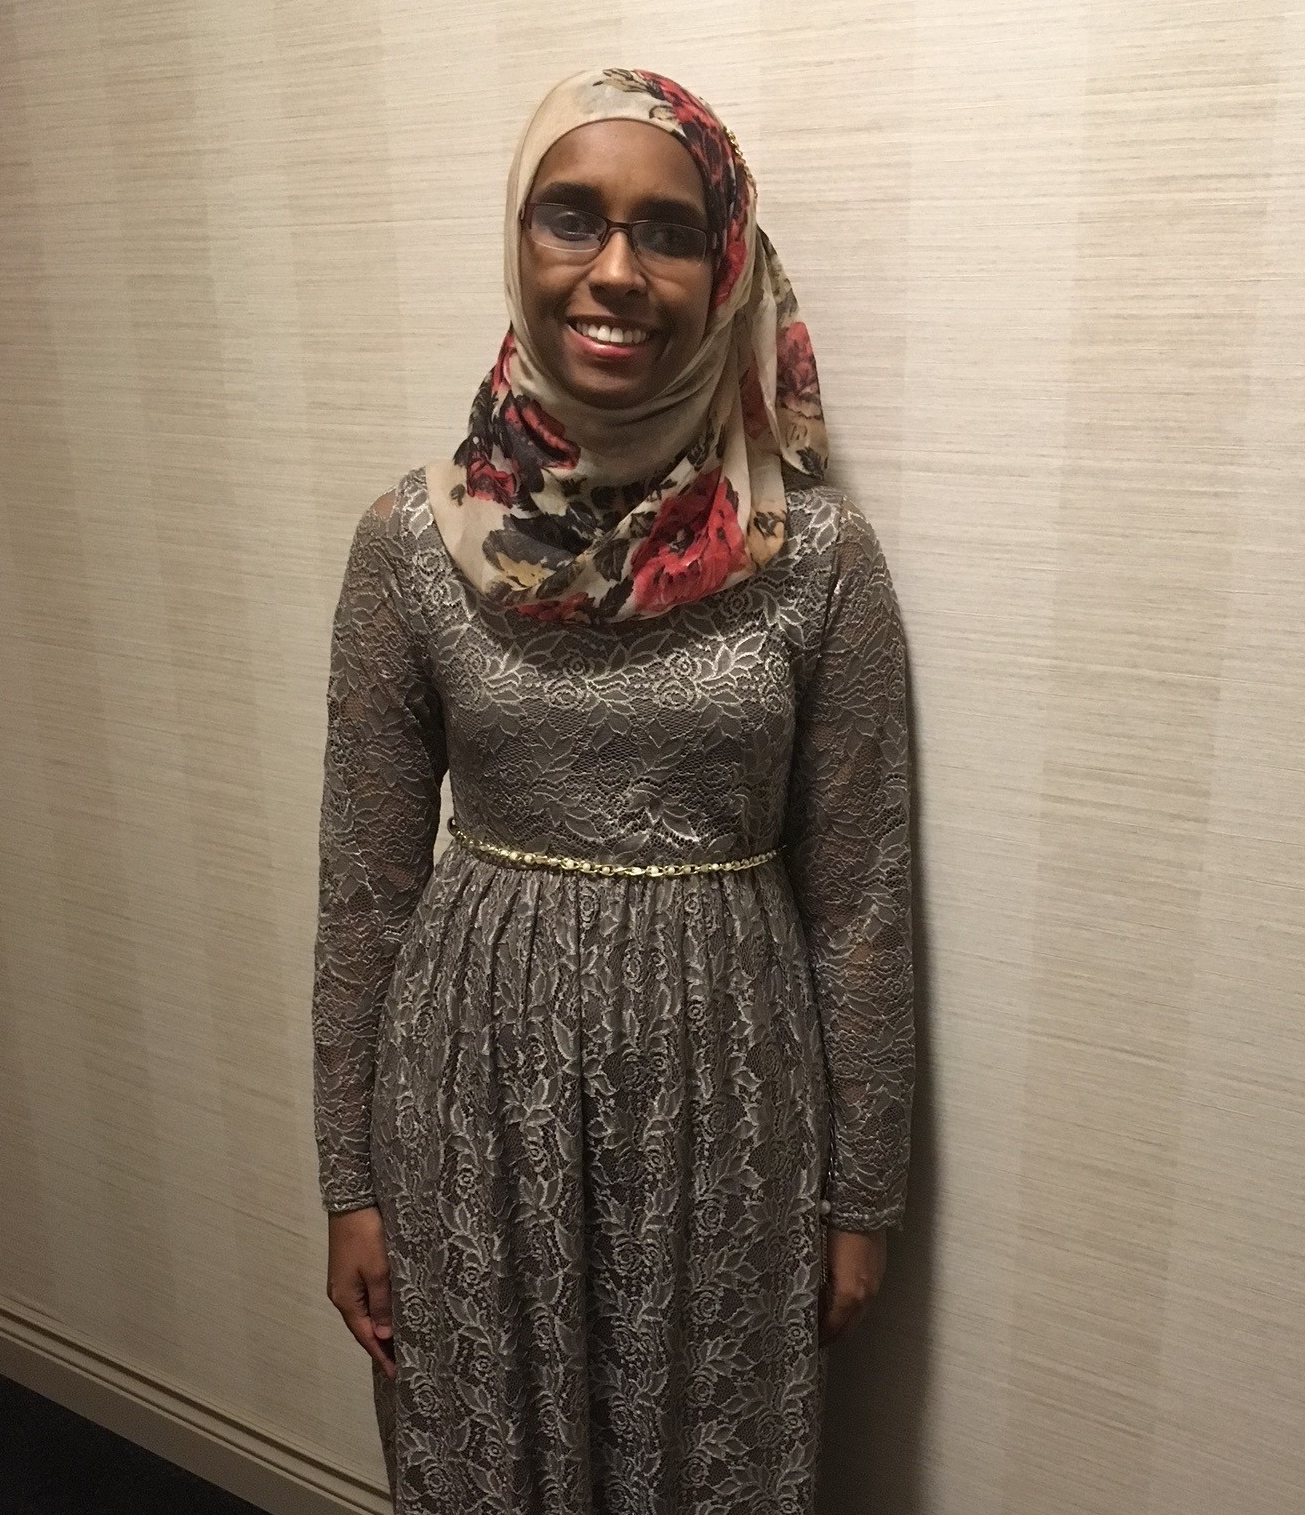 Ramla sourit et pose pour une photo sur un fond blanc. Elle porte une robe grise et un hijab.